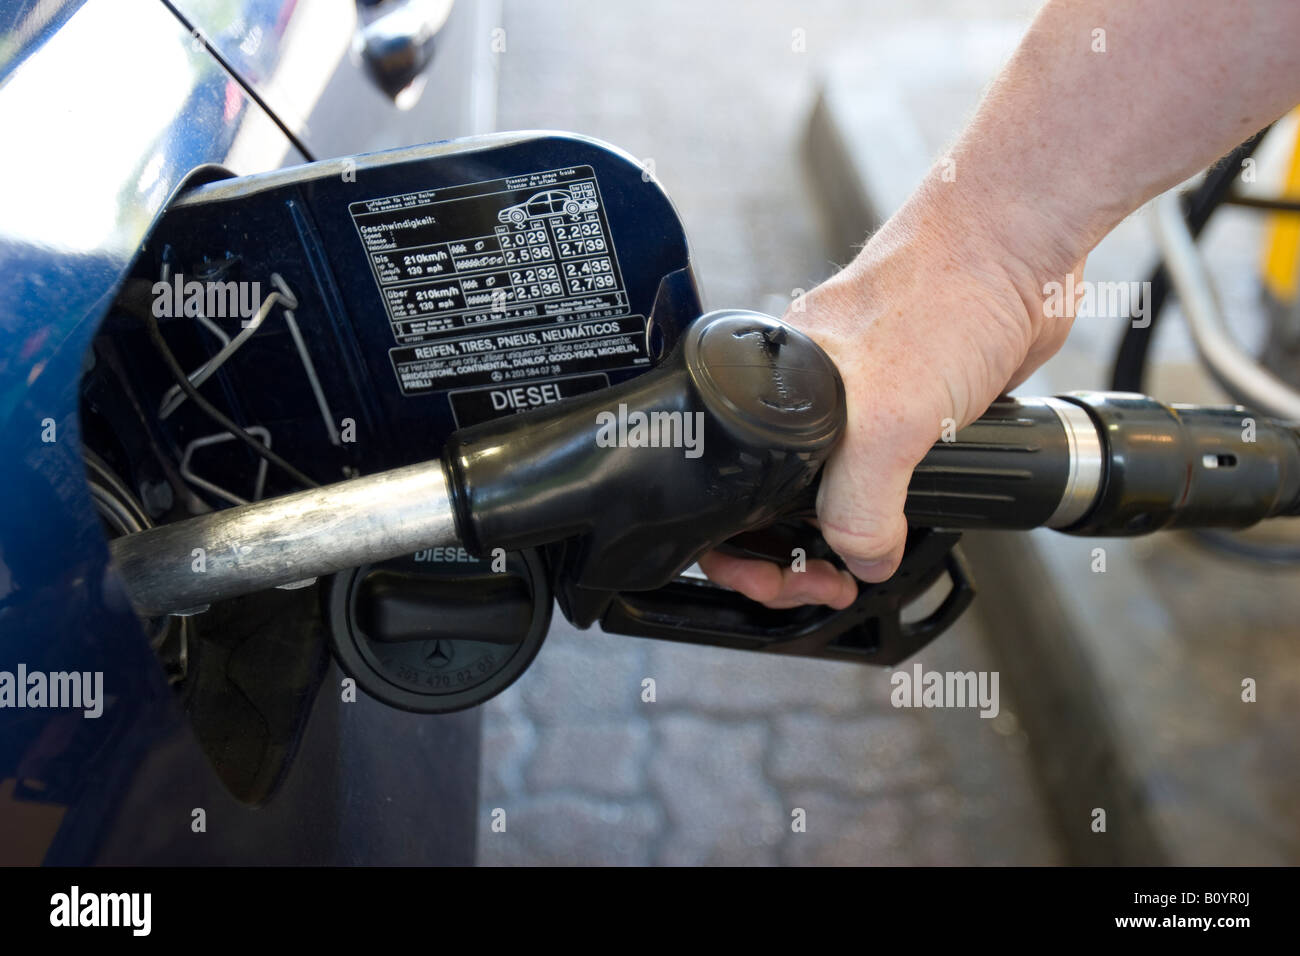 Diesel pump Stock Photo